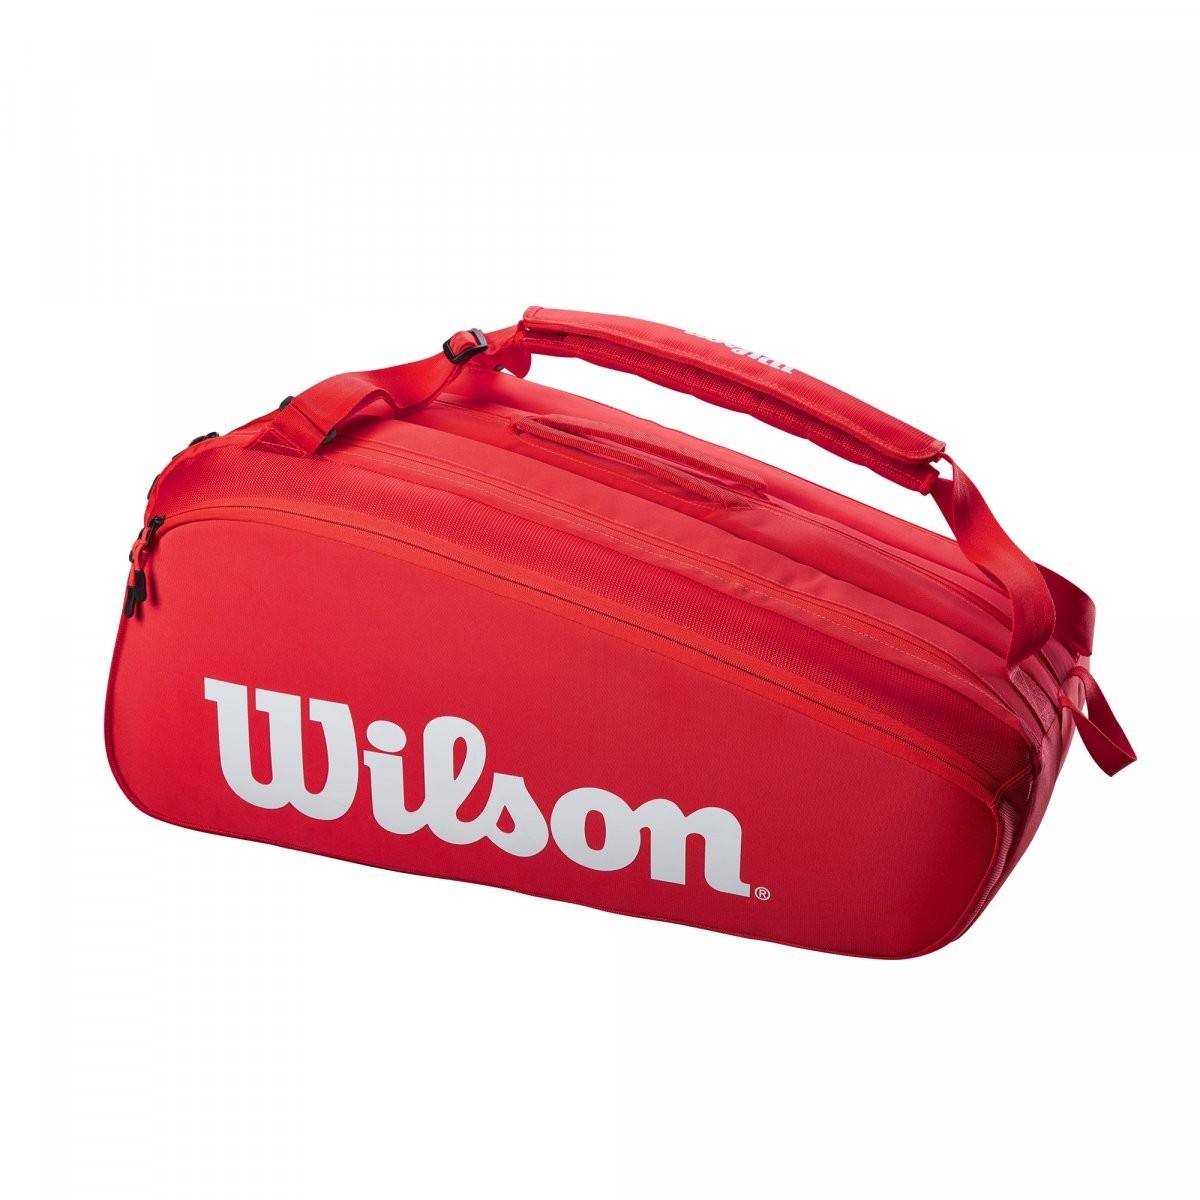 Теннисная сумка Wilson Super Tour 15 Pk Bag red